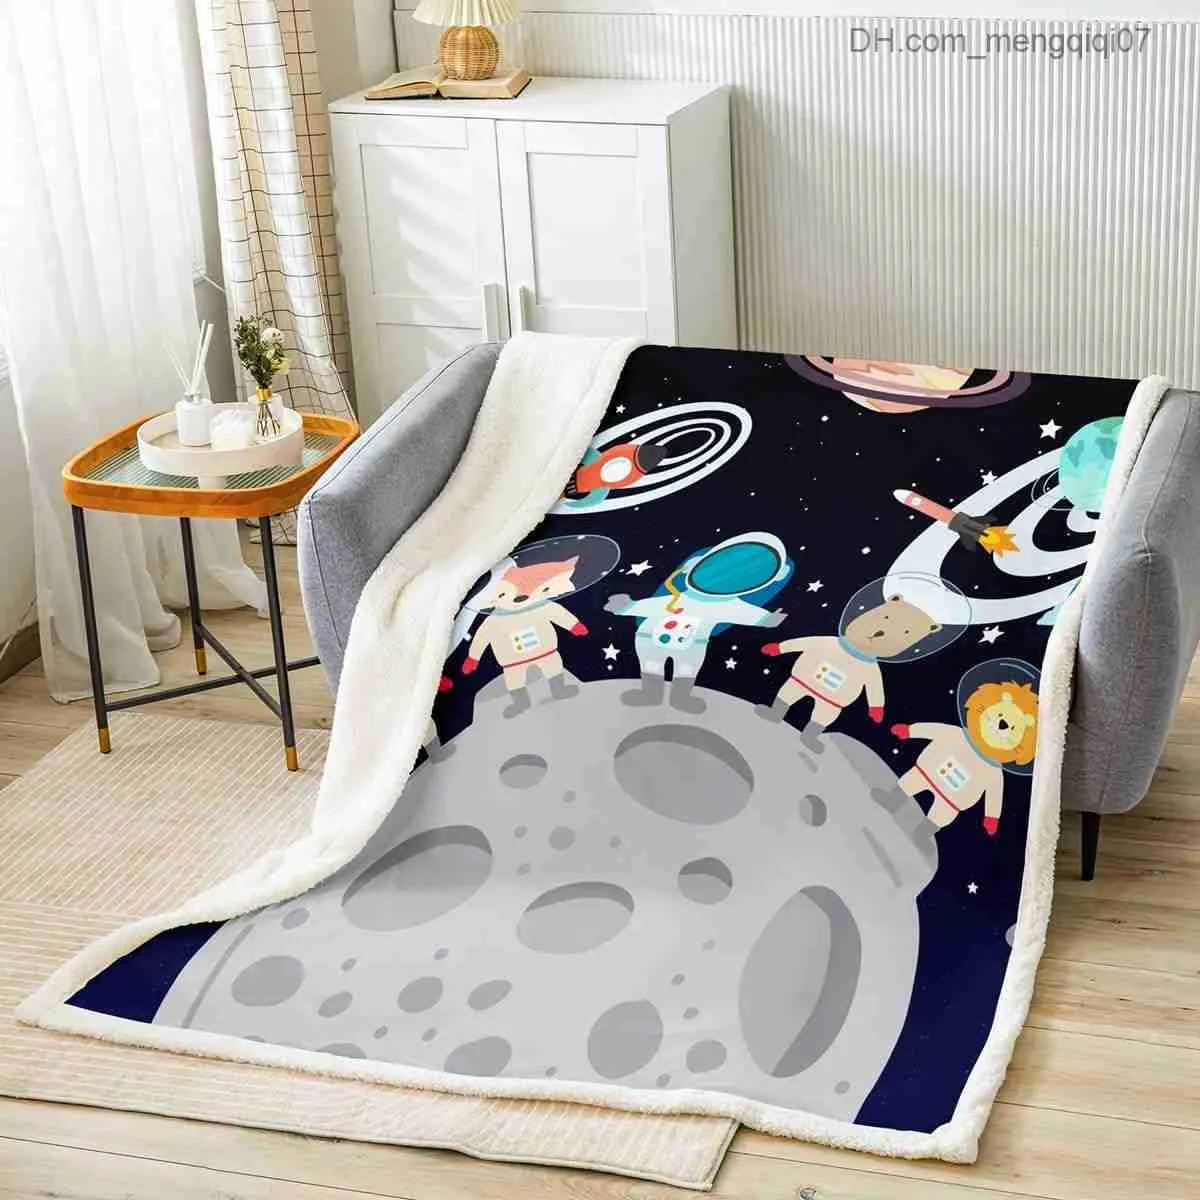 Couvertures Swaddling Jeter des couvertures dans l'espace animaux de dessin animé astronautes canapés couvertures planètes galactiques roquettes lits pour enfants couvertures Z230809